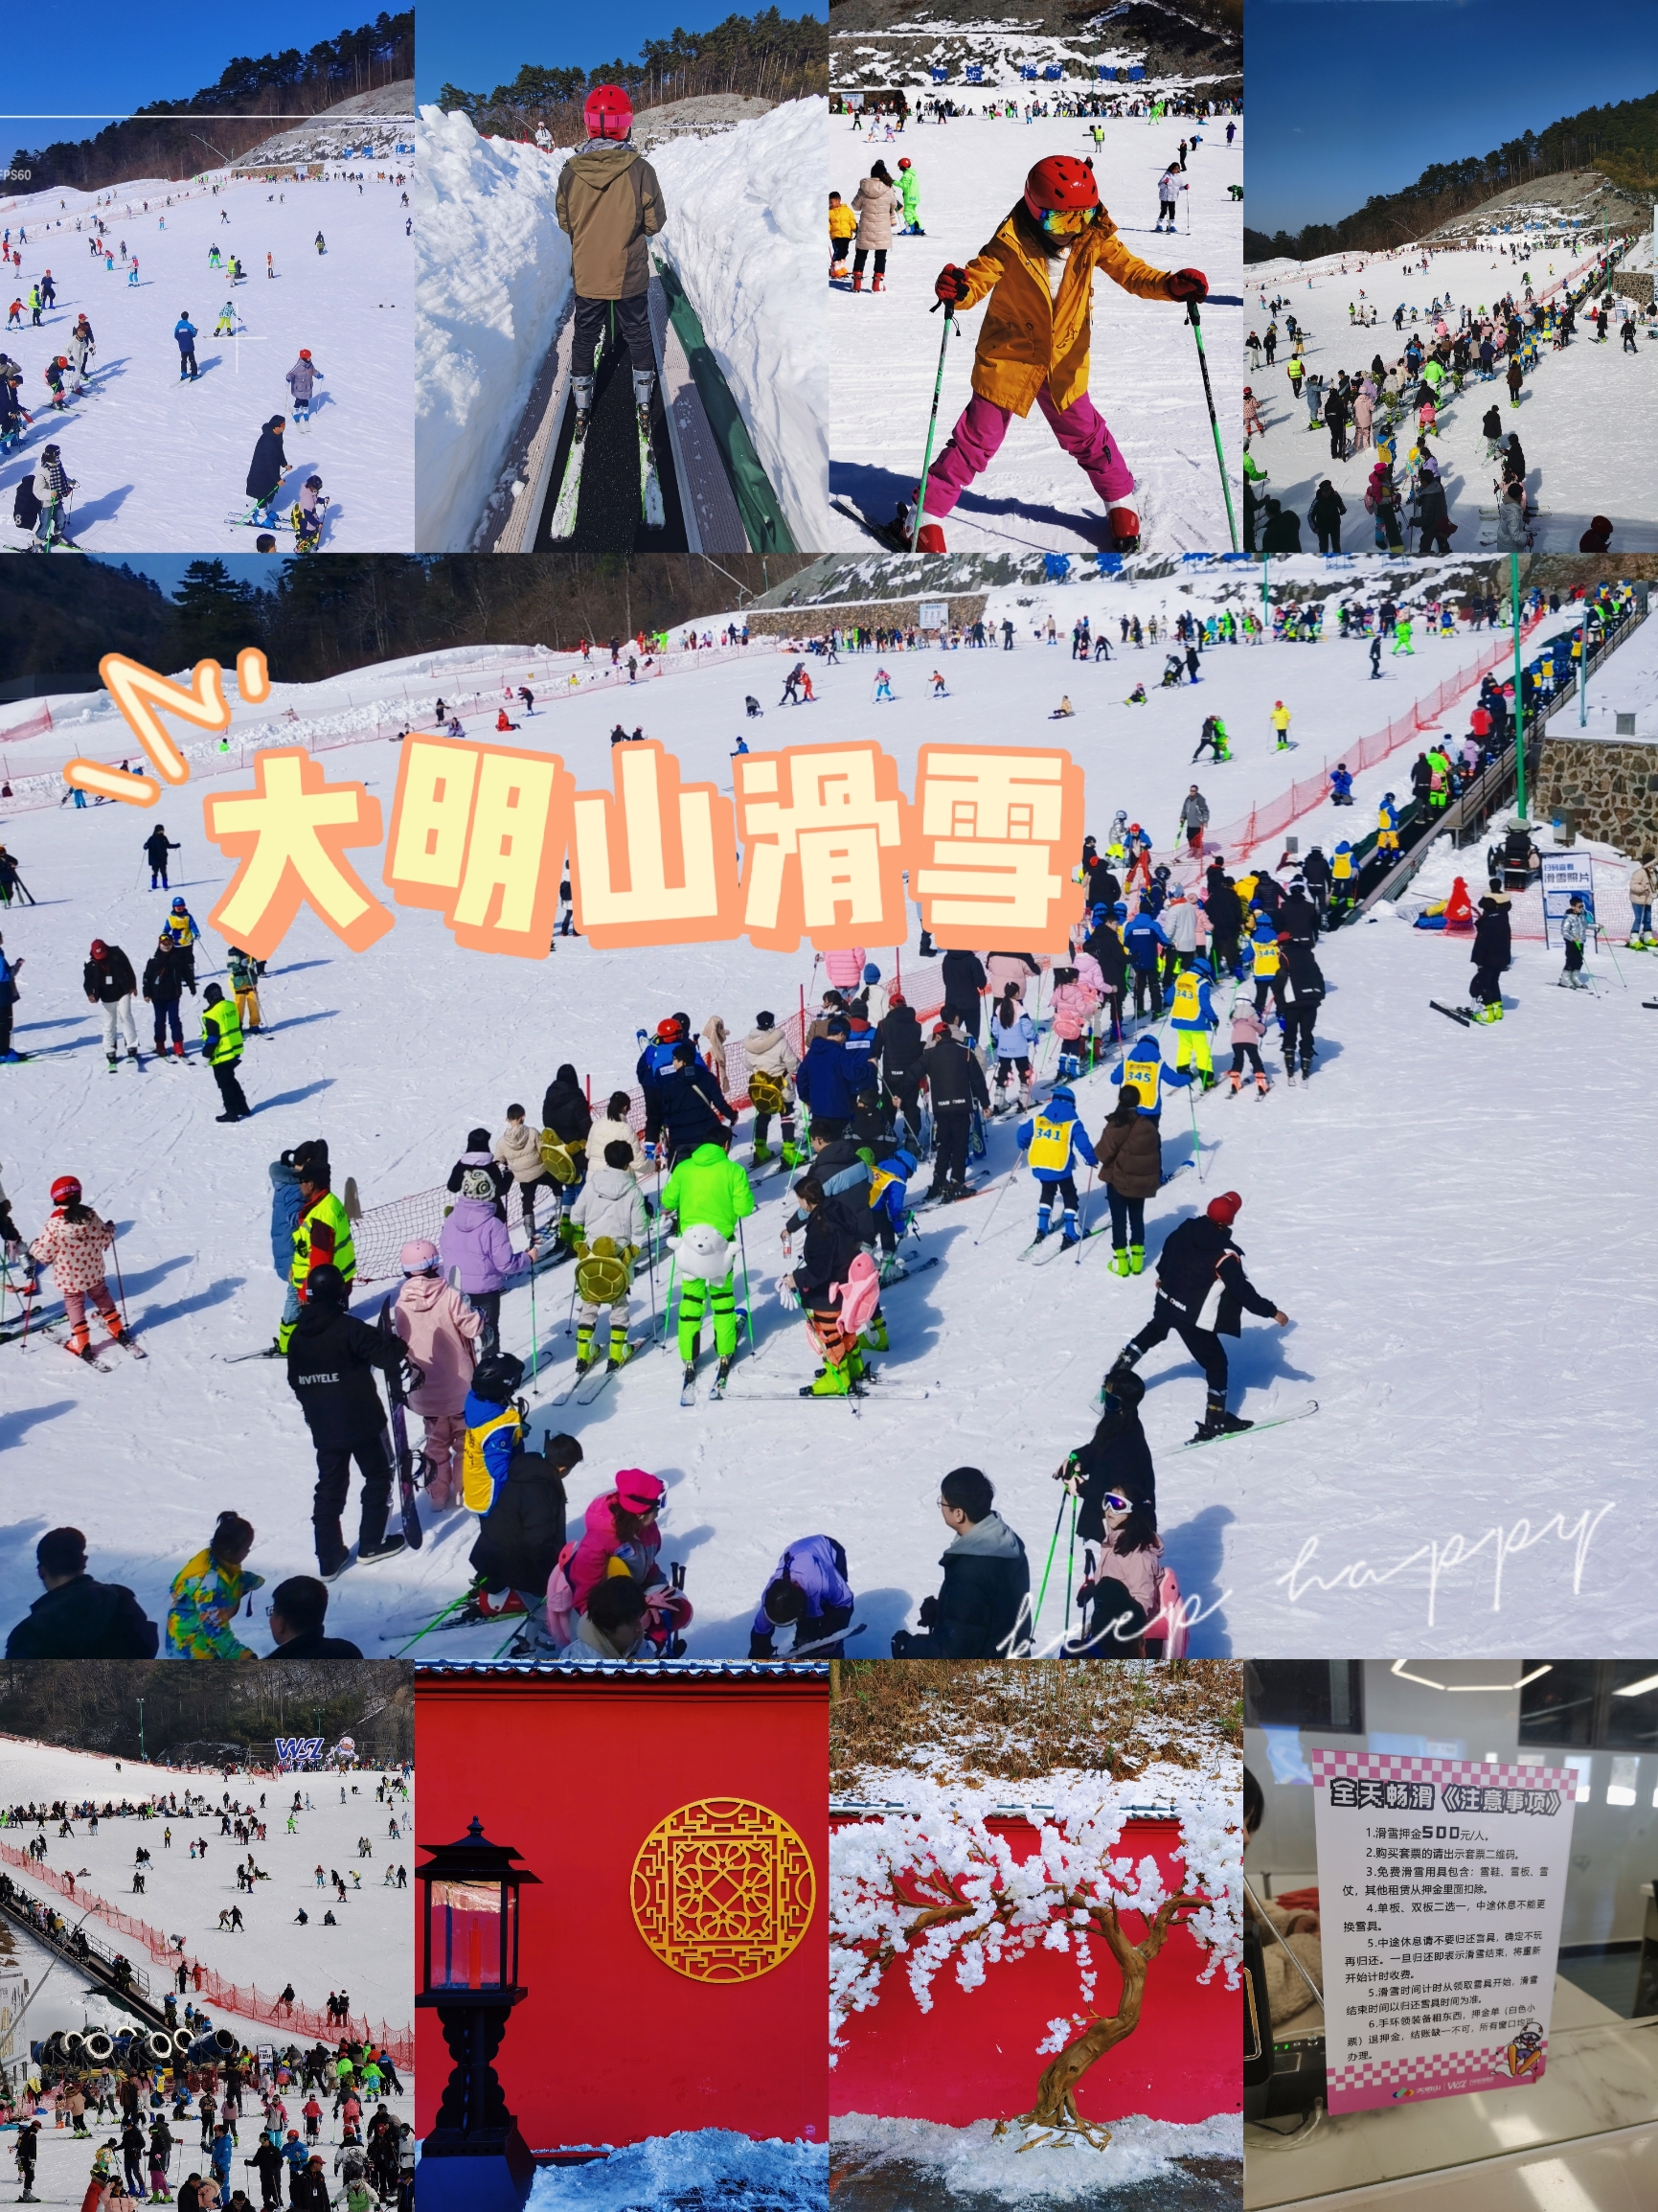 大明山滑雪⛷｜内含超详细攻略